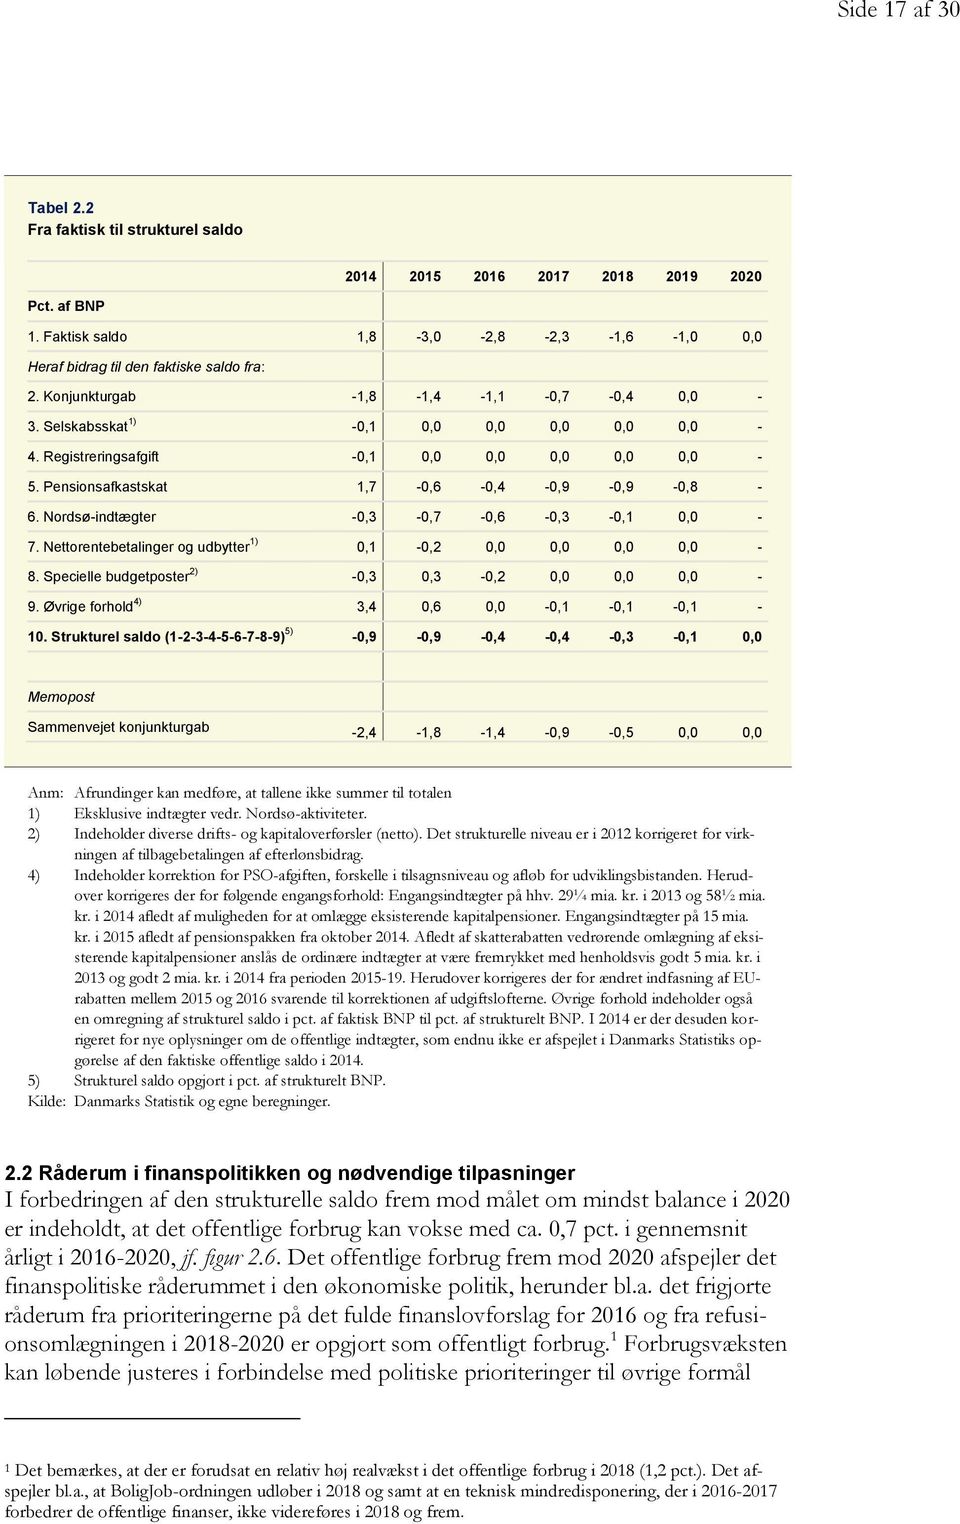 Nordsø-indtægter -0,3-0,7-0,6-0,3-0,1 0,0-7. Nettorentebetalinger og udbytter 1) 0,1-0,2 0,0 0,0 0,0 0,0-8. Specielle budgetposter 2) -0,3 0,3-0,2 0,0 0,0 0,0-9.